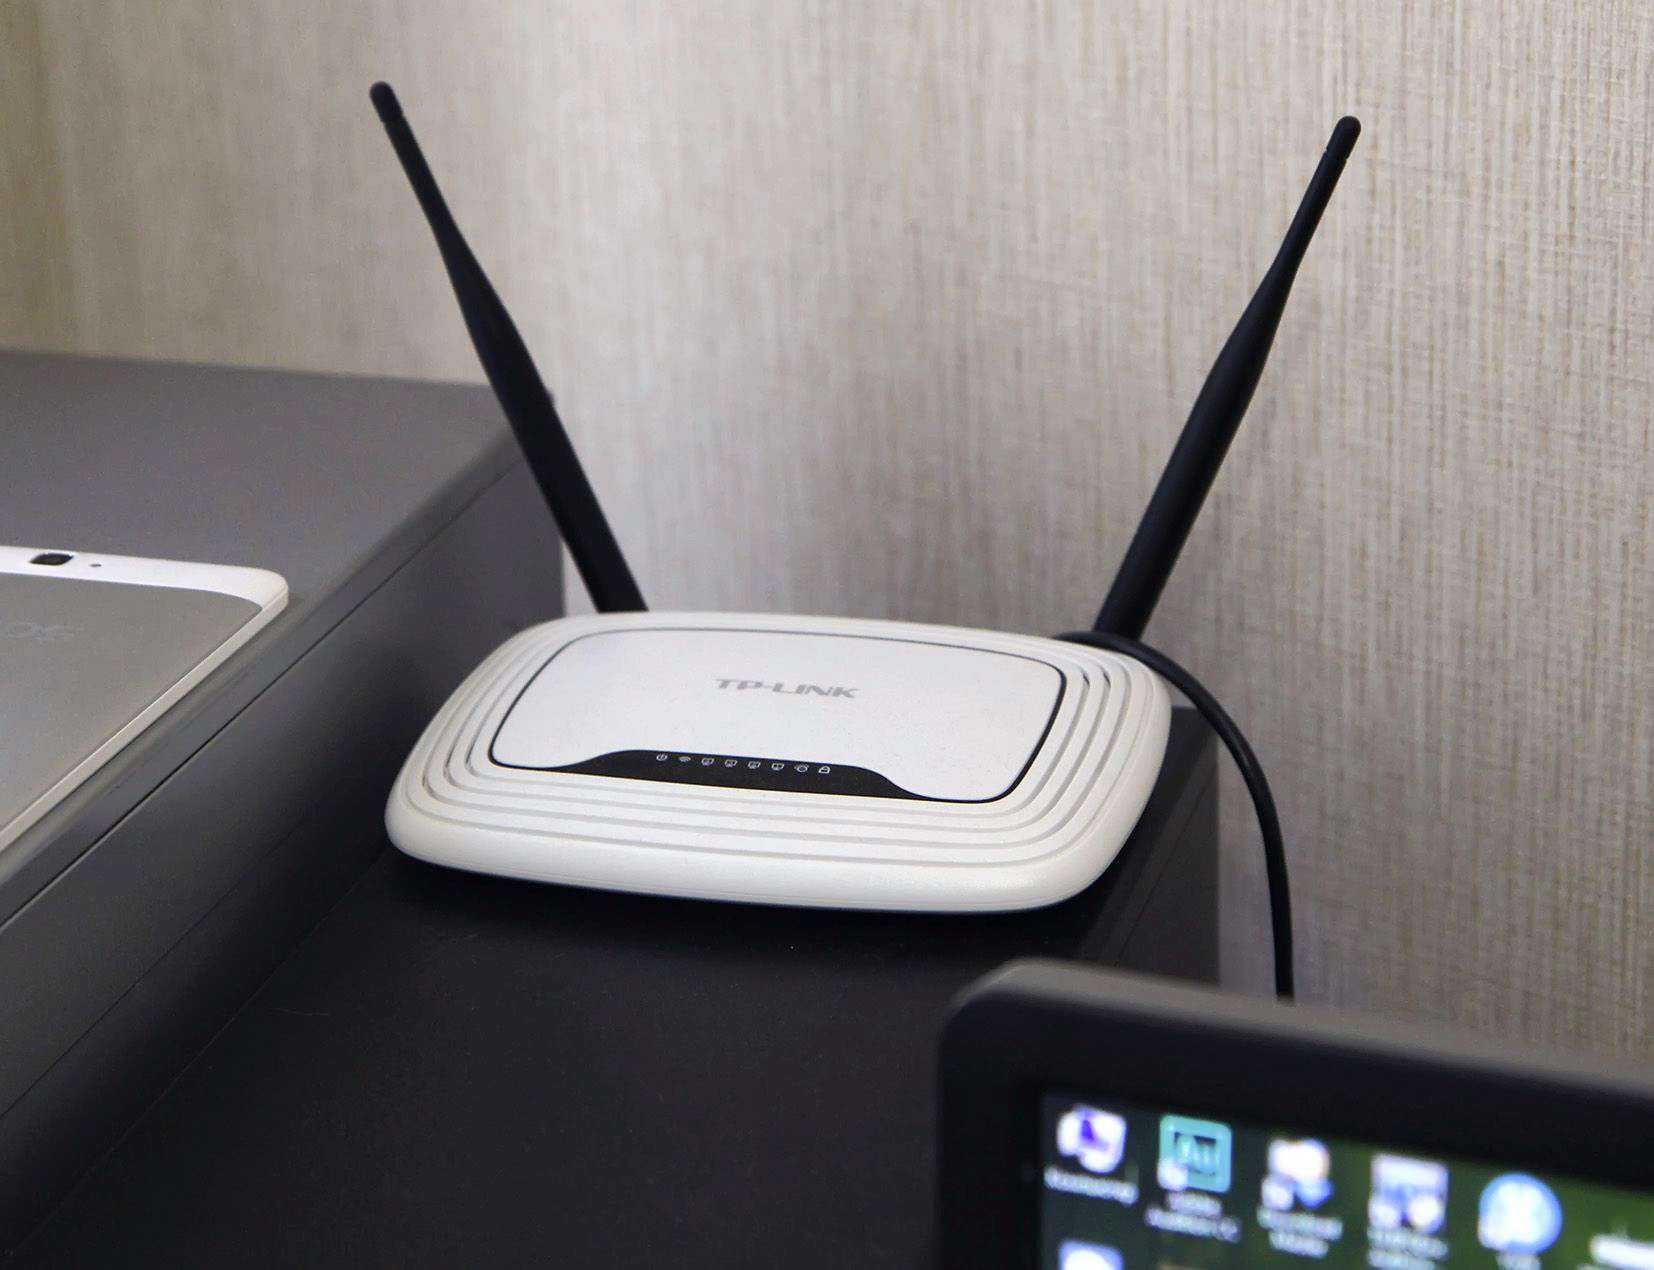 Лучшие wi-fi роутеры с 802.11ac (5 ггц) — в чем их отличия и преимущества